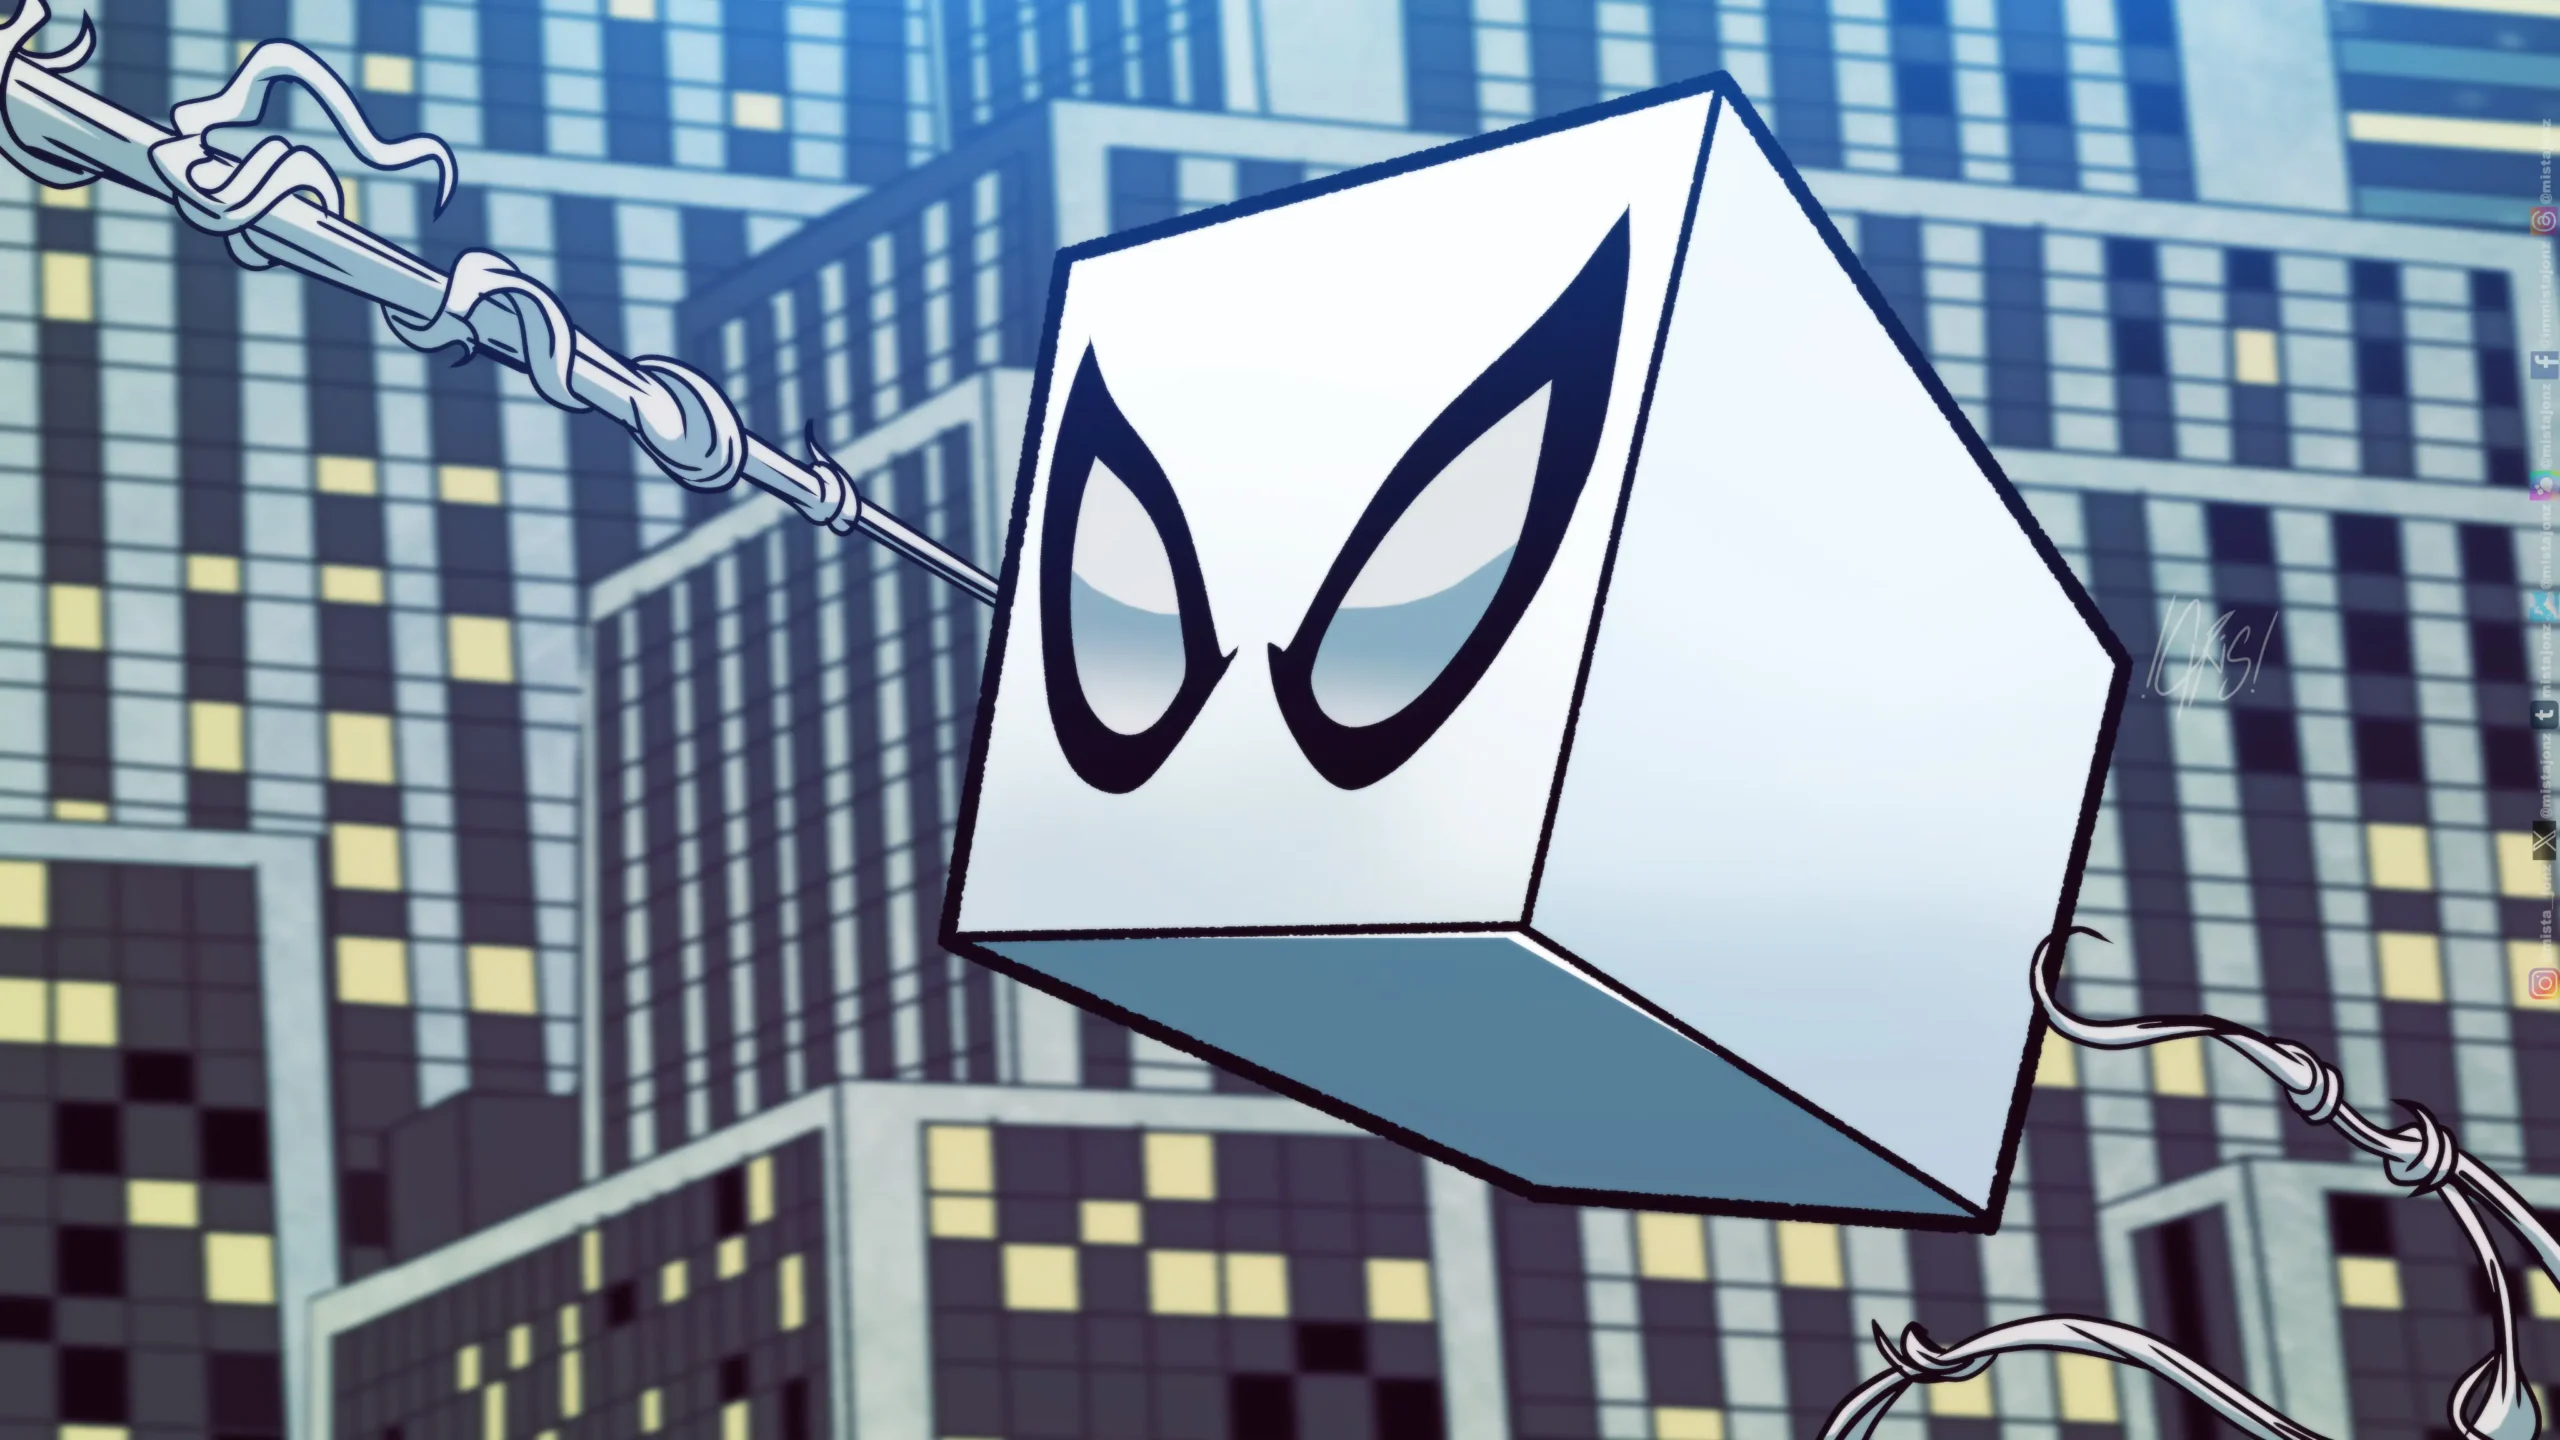 Spider-Man 2: Как Человек-паук превратился в Уникальное Явление — Куб-паука!